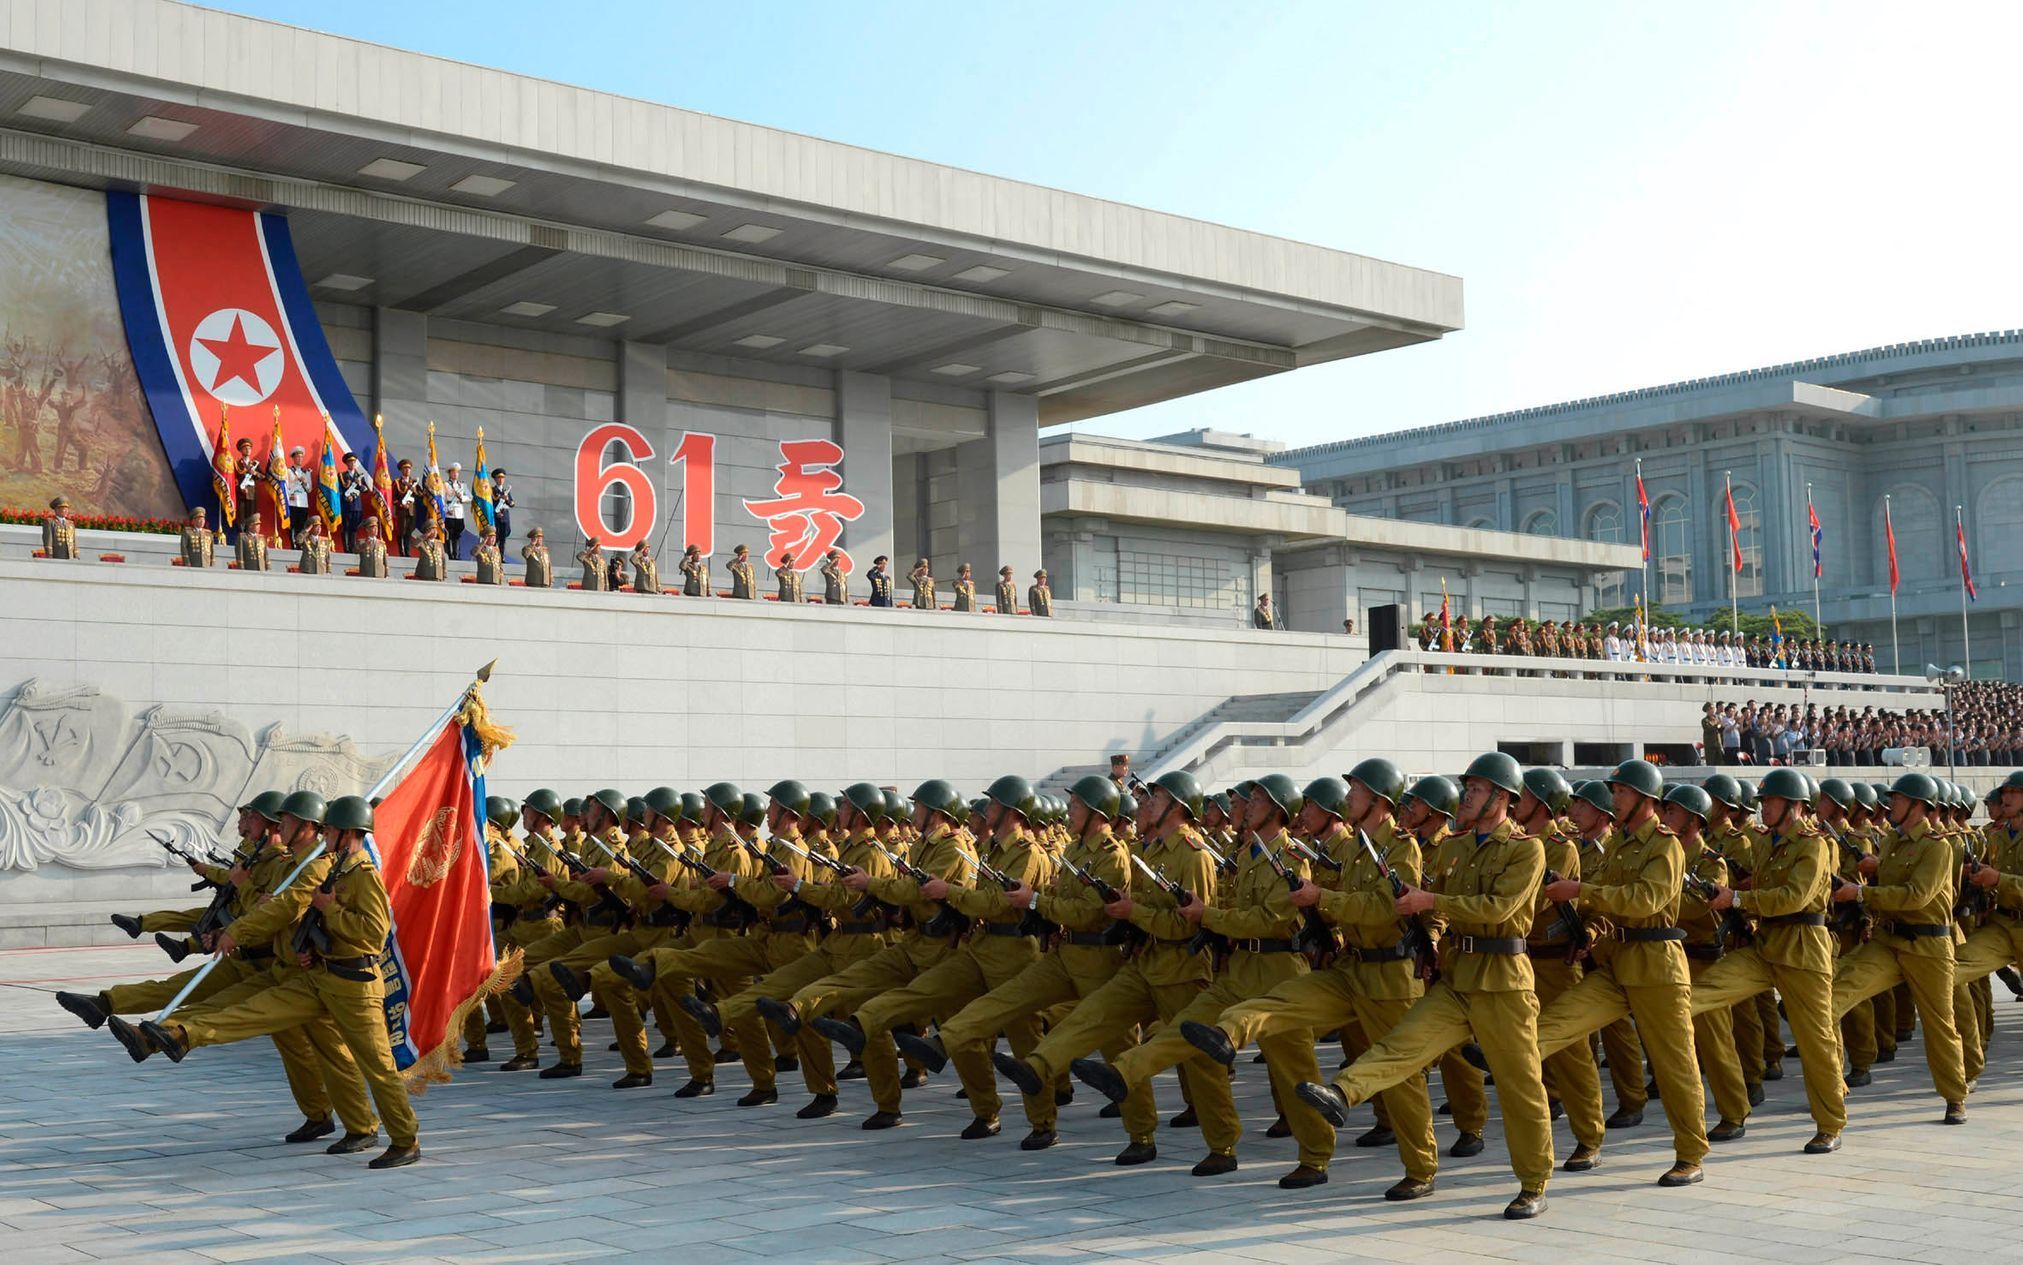 KLDR - oslavy výročí ukončení korejské války